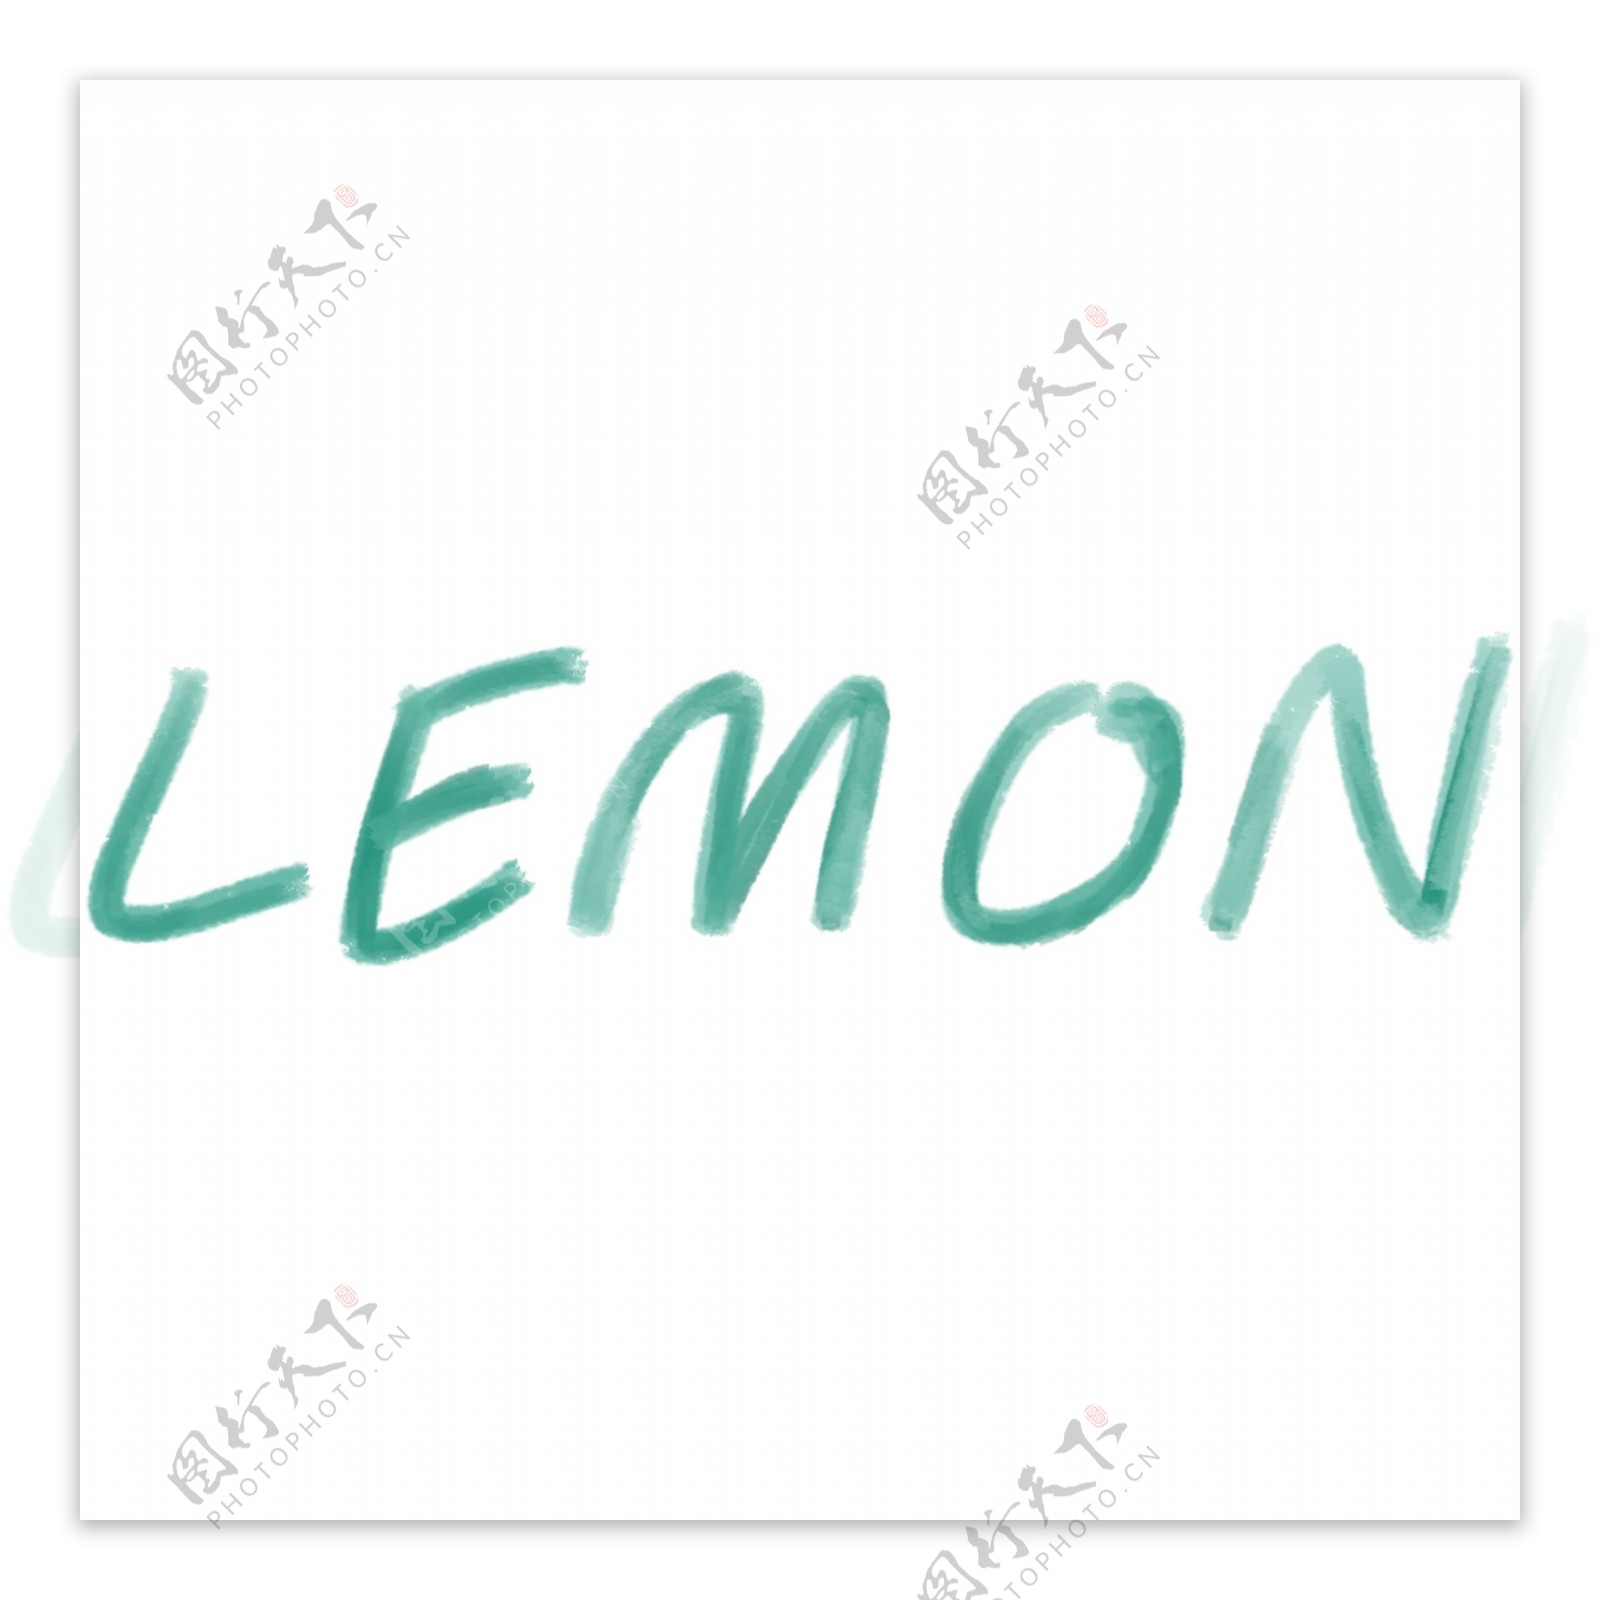 柠檬英文字体设计png